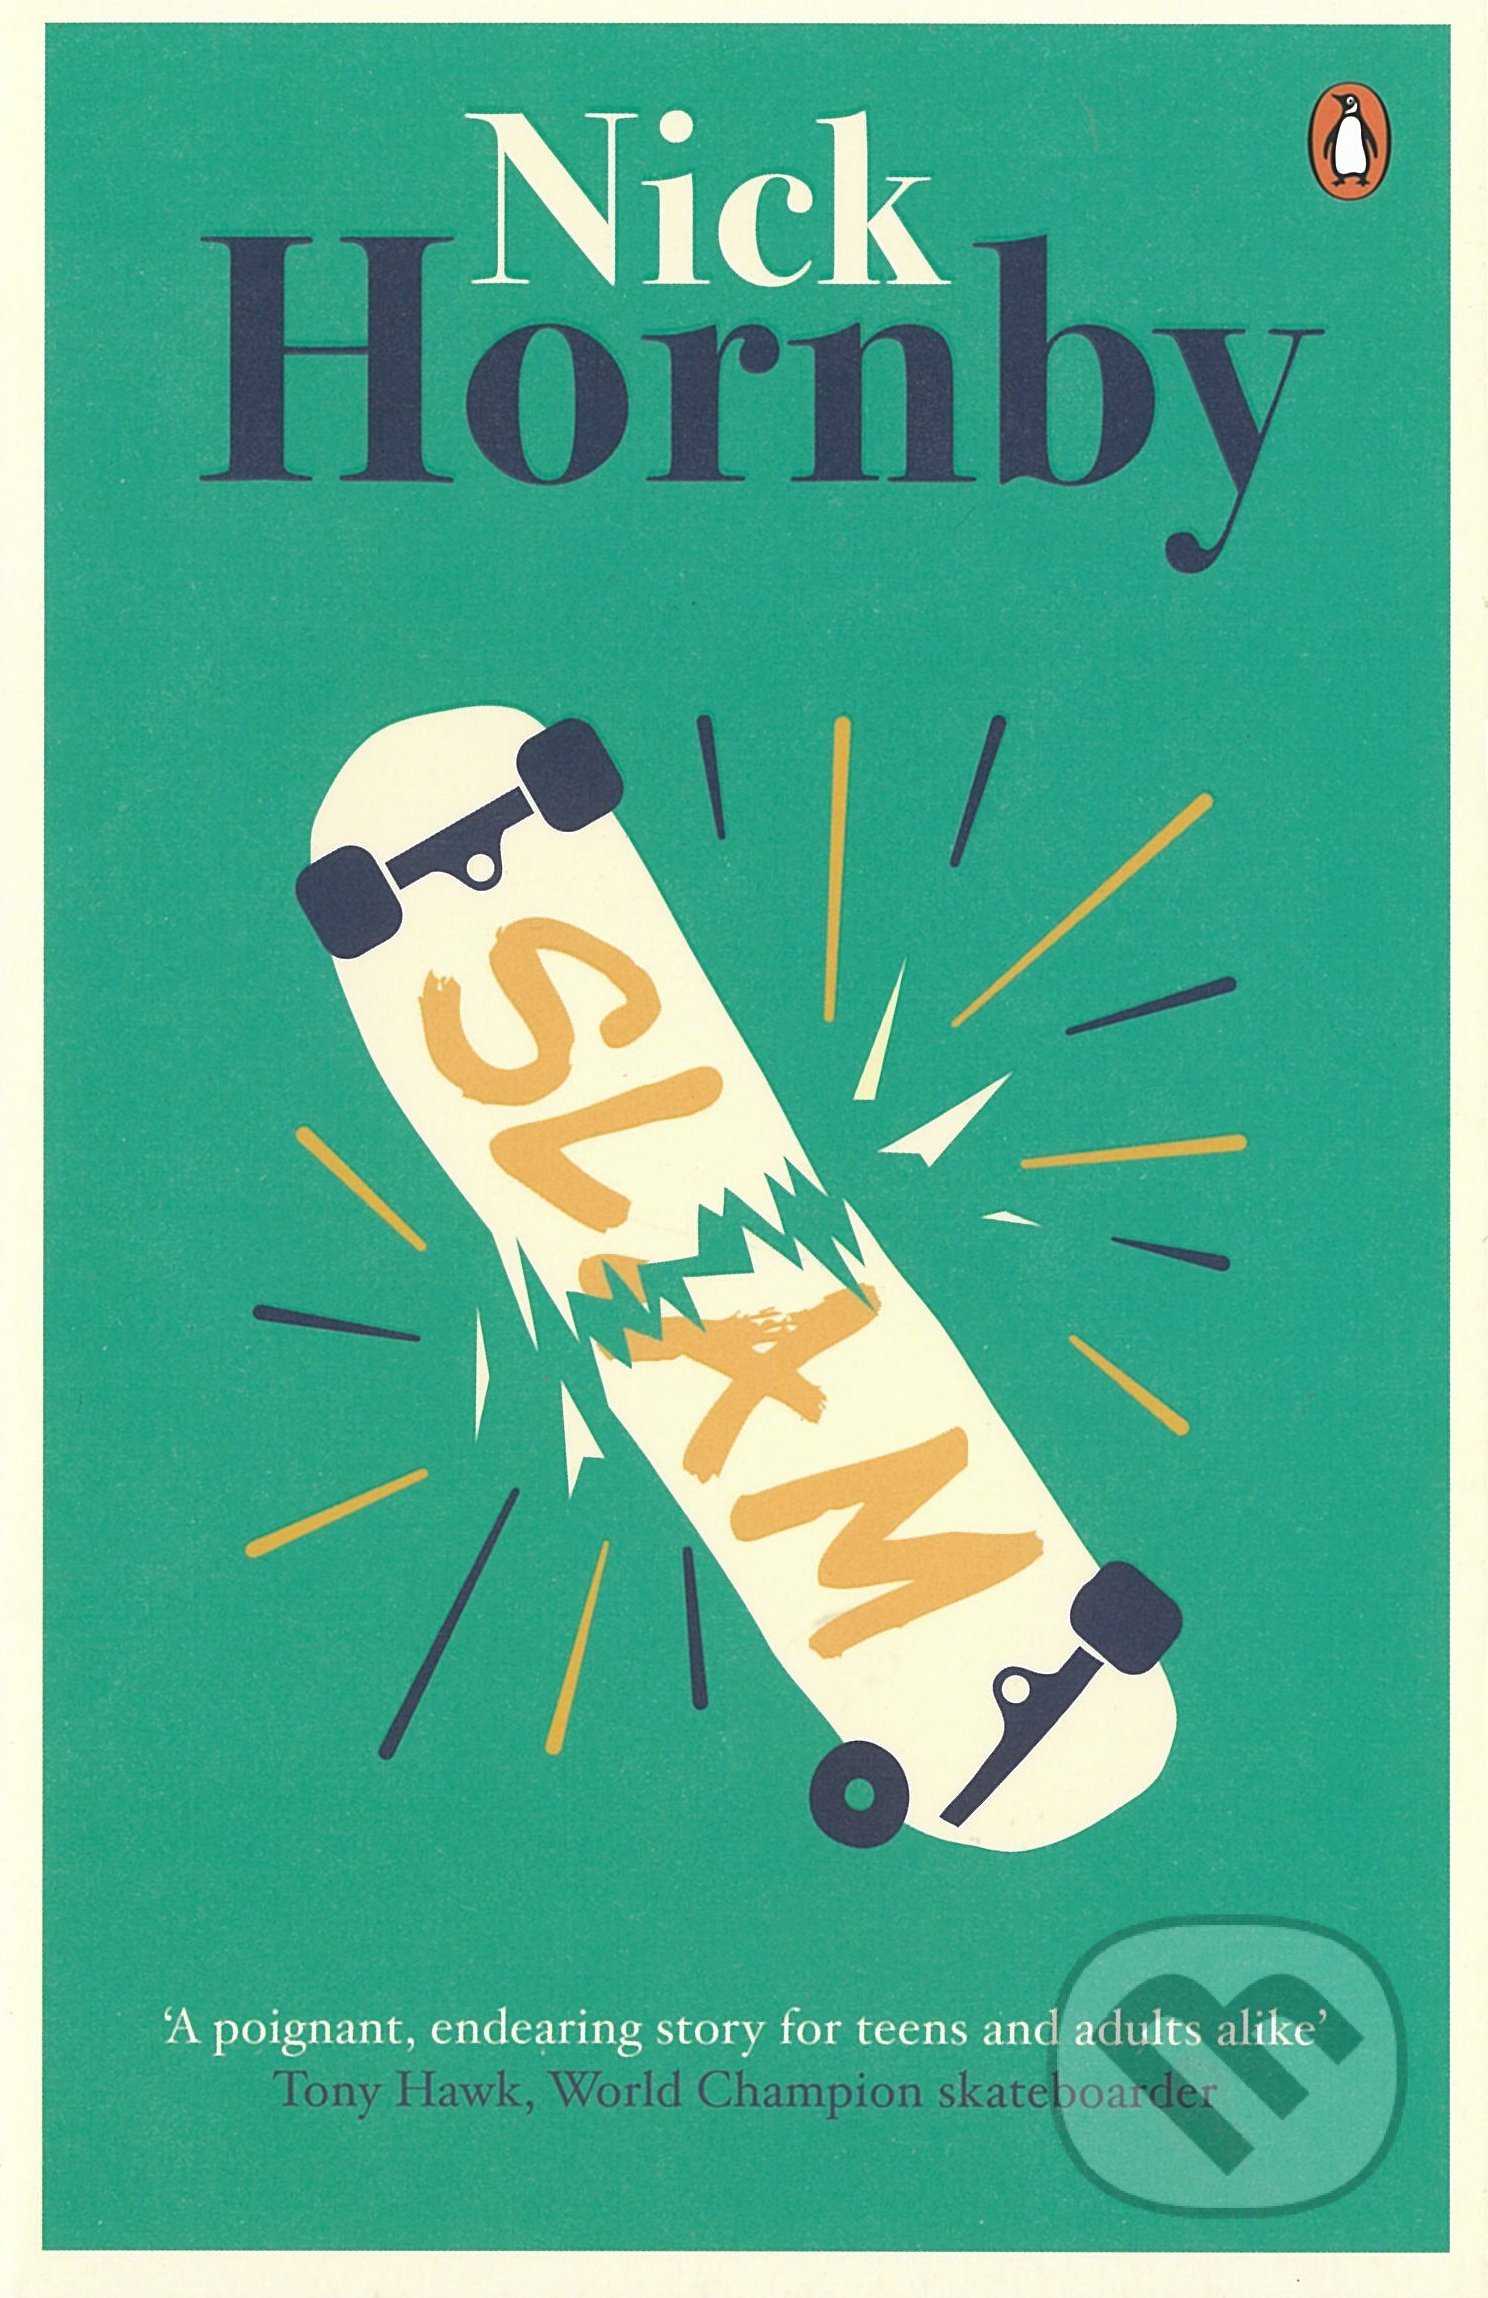 Slam - Nick Hornby, Penguin Books, 2014